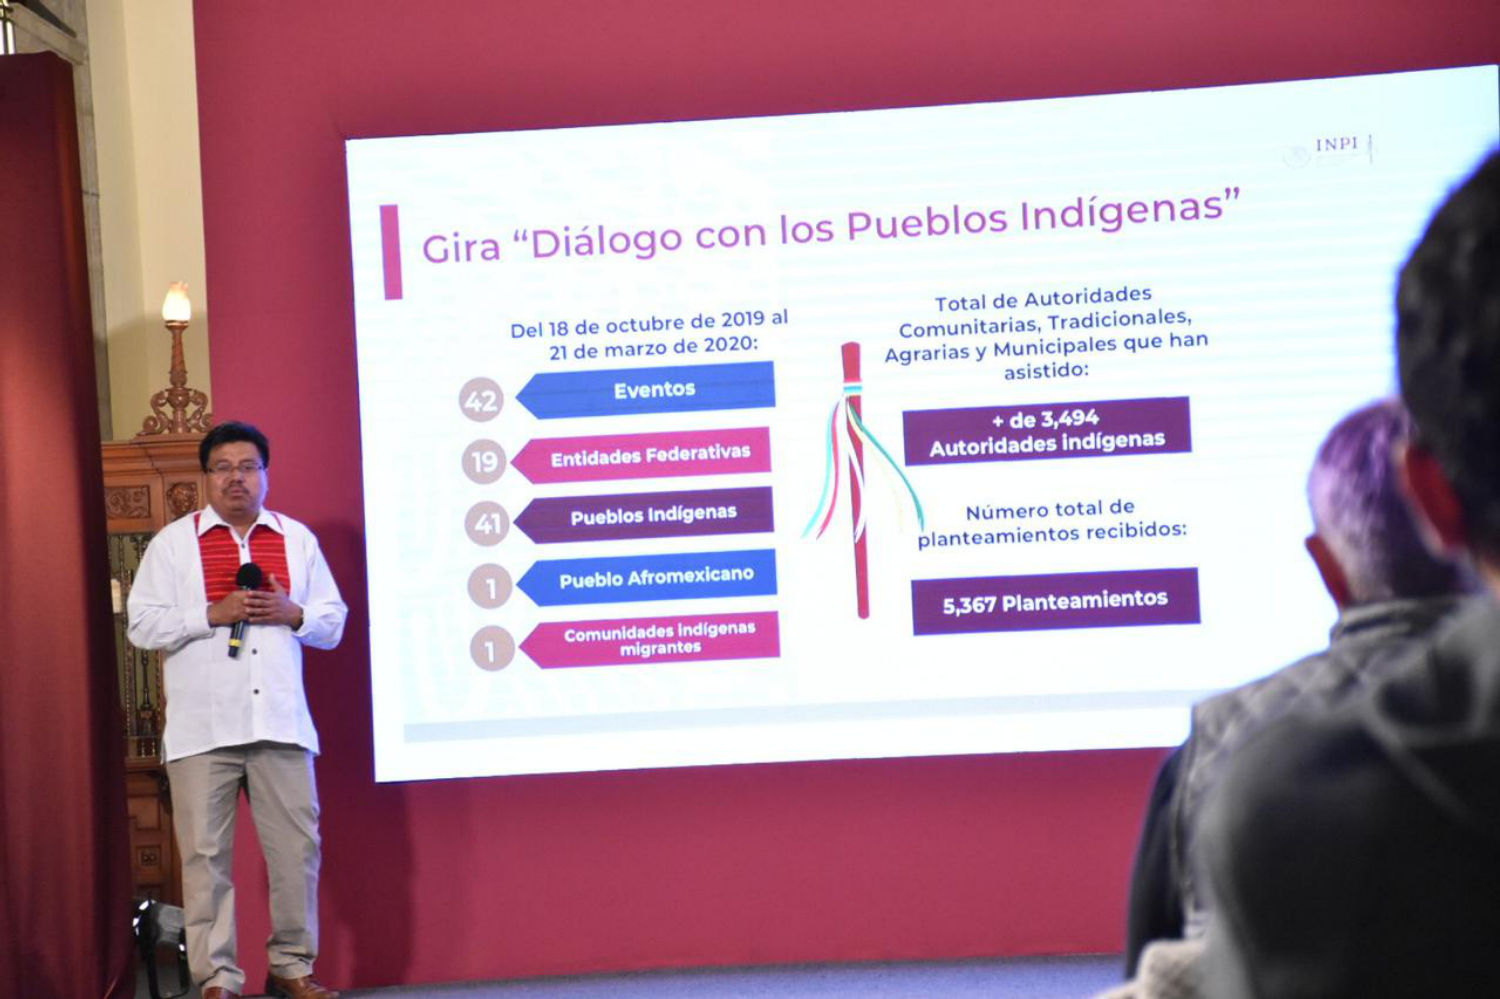 El INPI cumple el mandato de servir a los pueblos indígenas, garantizando el ejercicio de sus derechos y su desarrollo integral